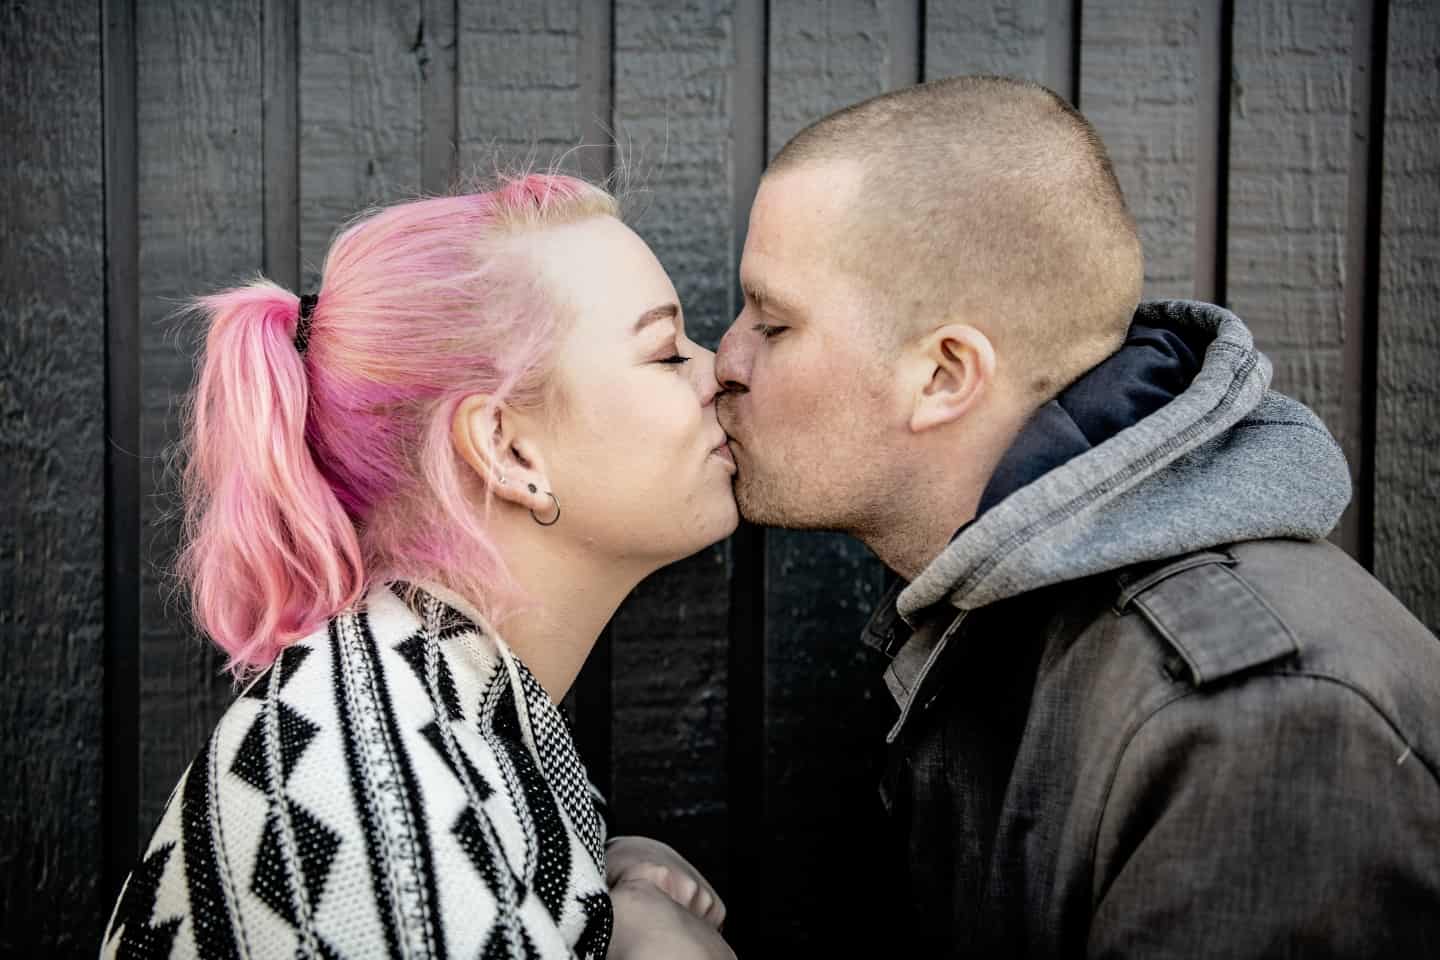 Naja og Jesper mødte hinanden på scor.dk for 10 år siden, men har stadig en aktiv datingprofil Swingerlivet har styrket vores forhold hsfo.dk